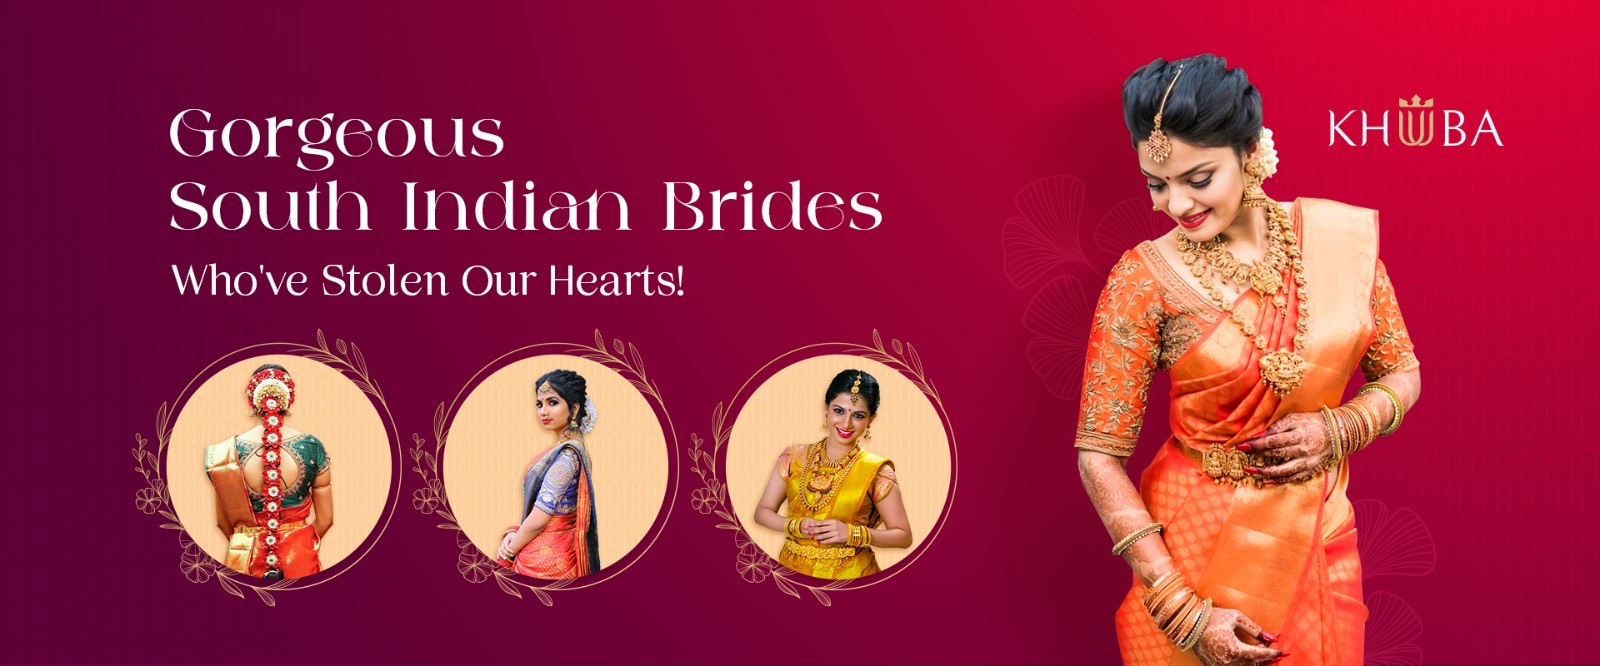 60+ Lehenga Blouse Designs To Browse & Take Inspiration From!  Lehenga  blouse designs, Bridal lehenga blouse design, Indian bridal dress